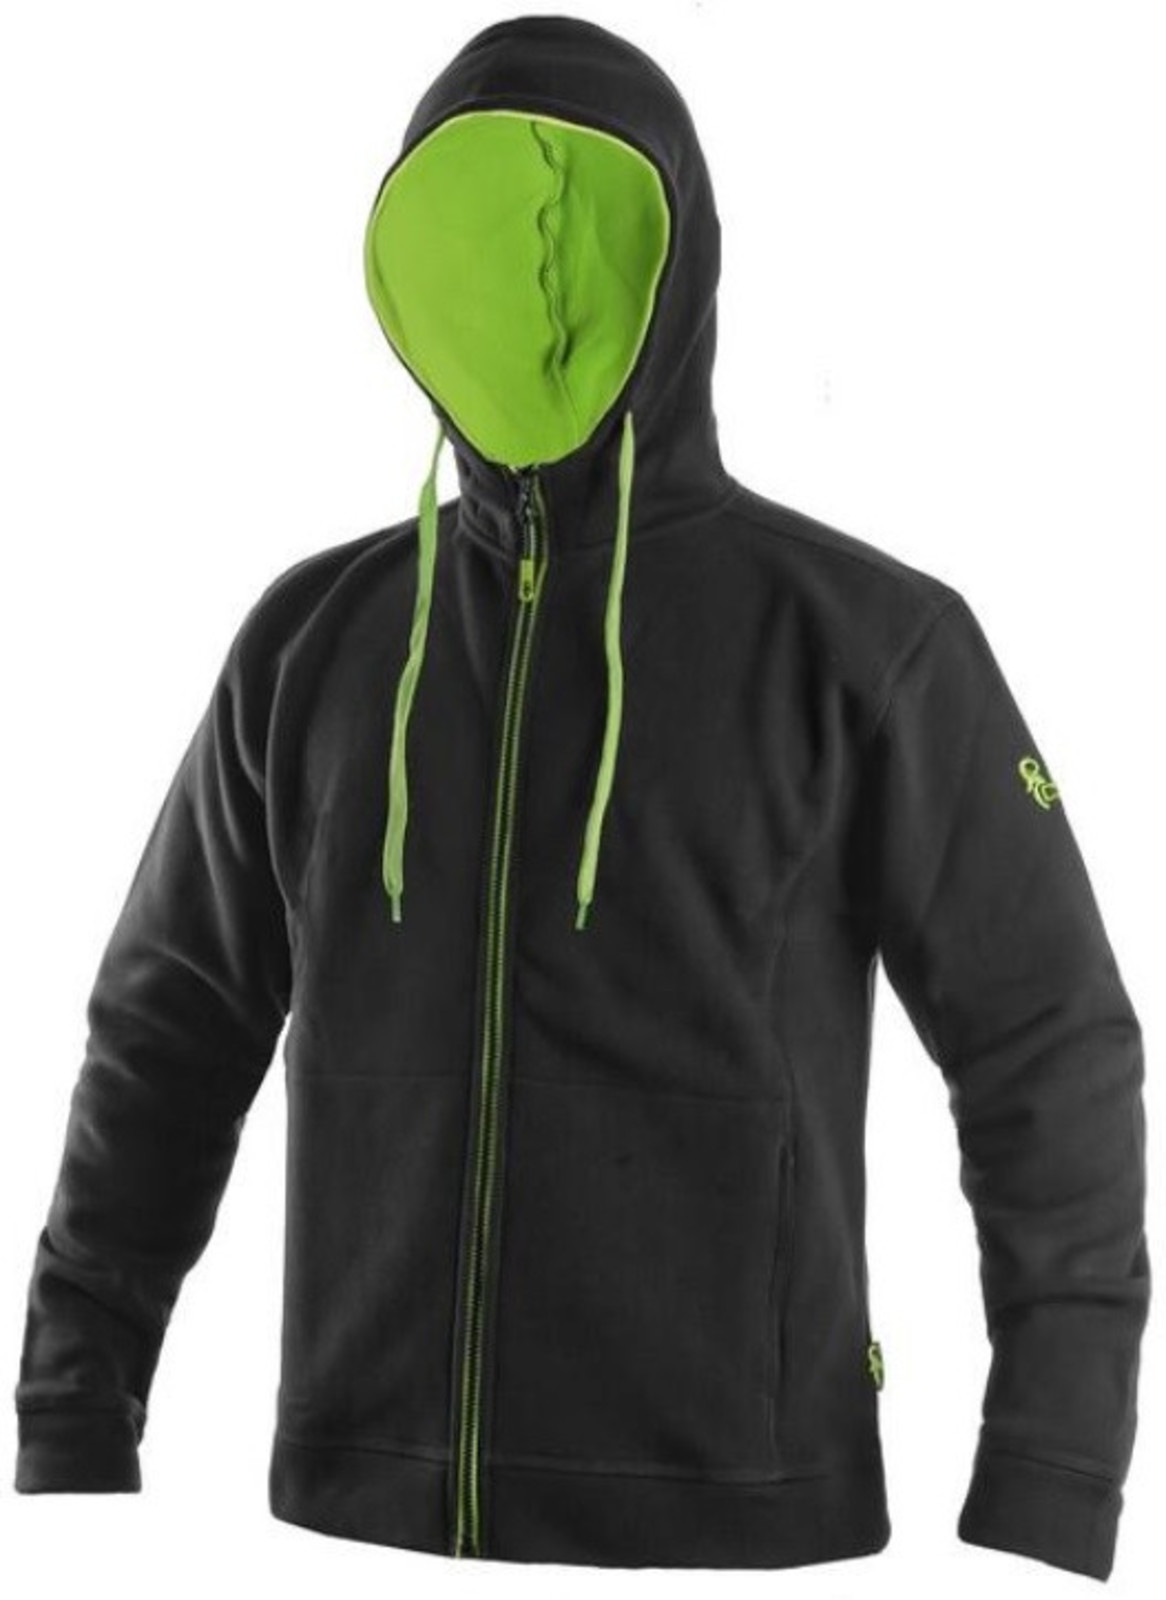 Mikina na zips s kapucňou CXS Harrison - veľkosť: L, farba: čierna/zelená